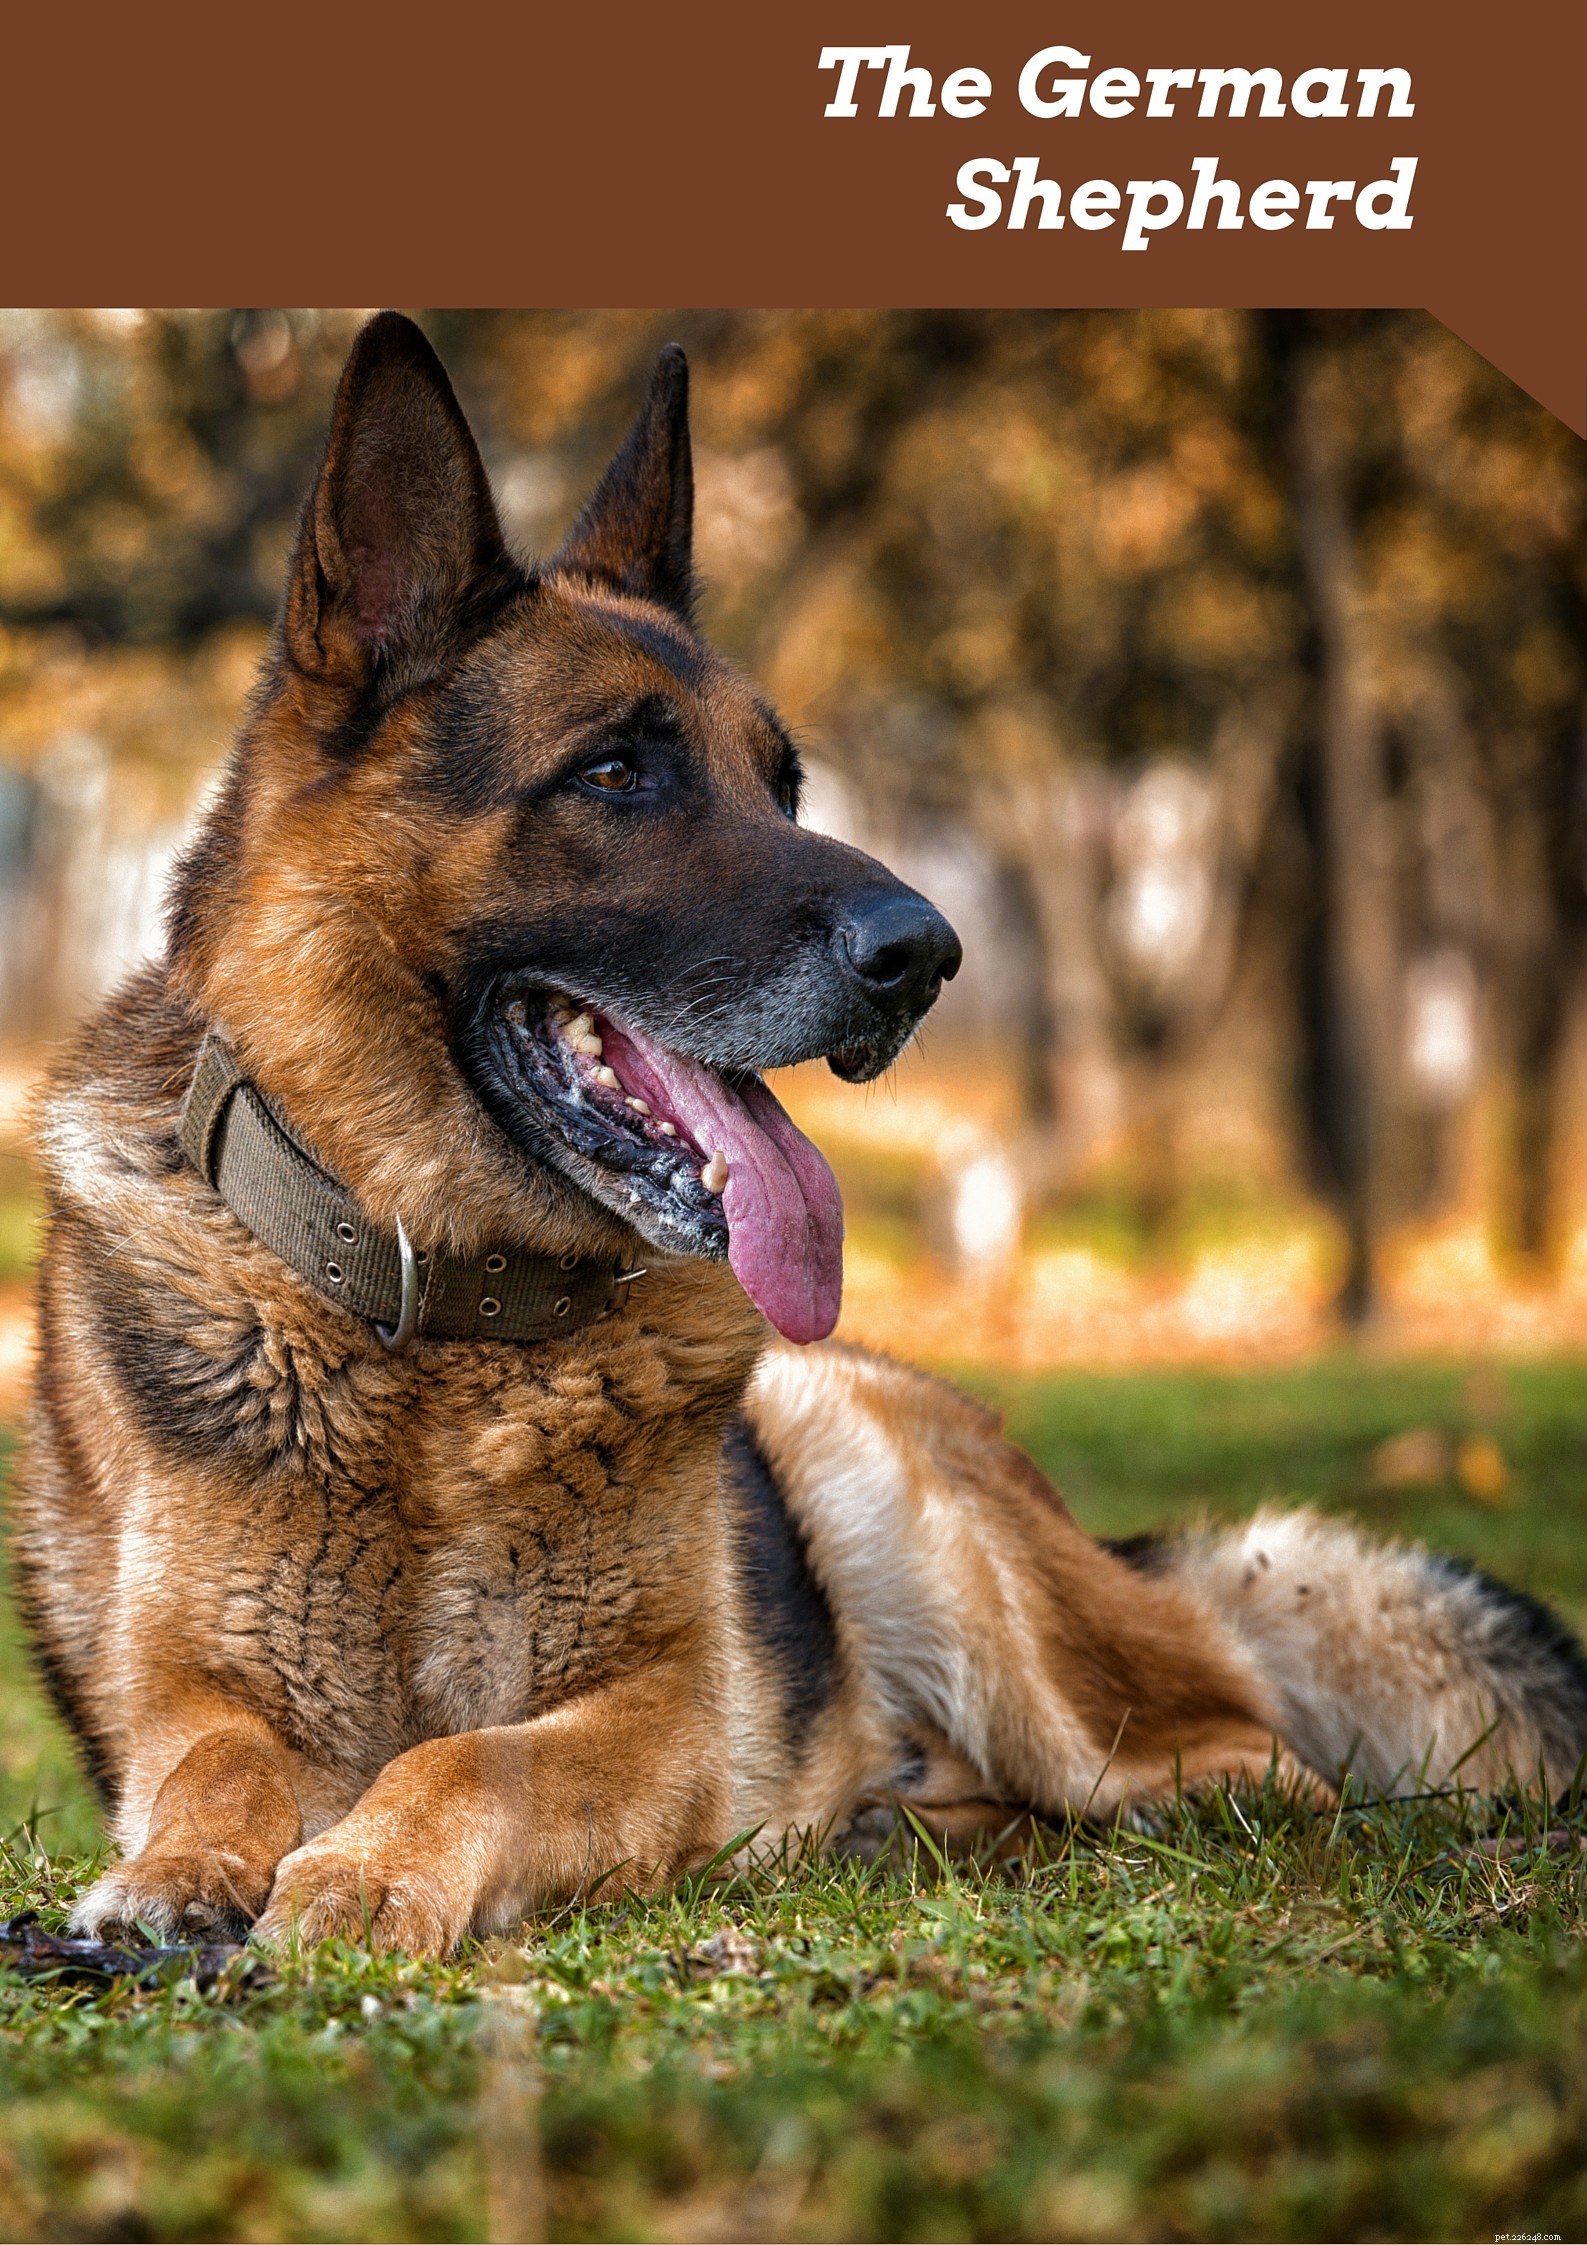 Centro de informações sobre a raça do cão pastor alemão